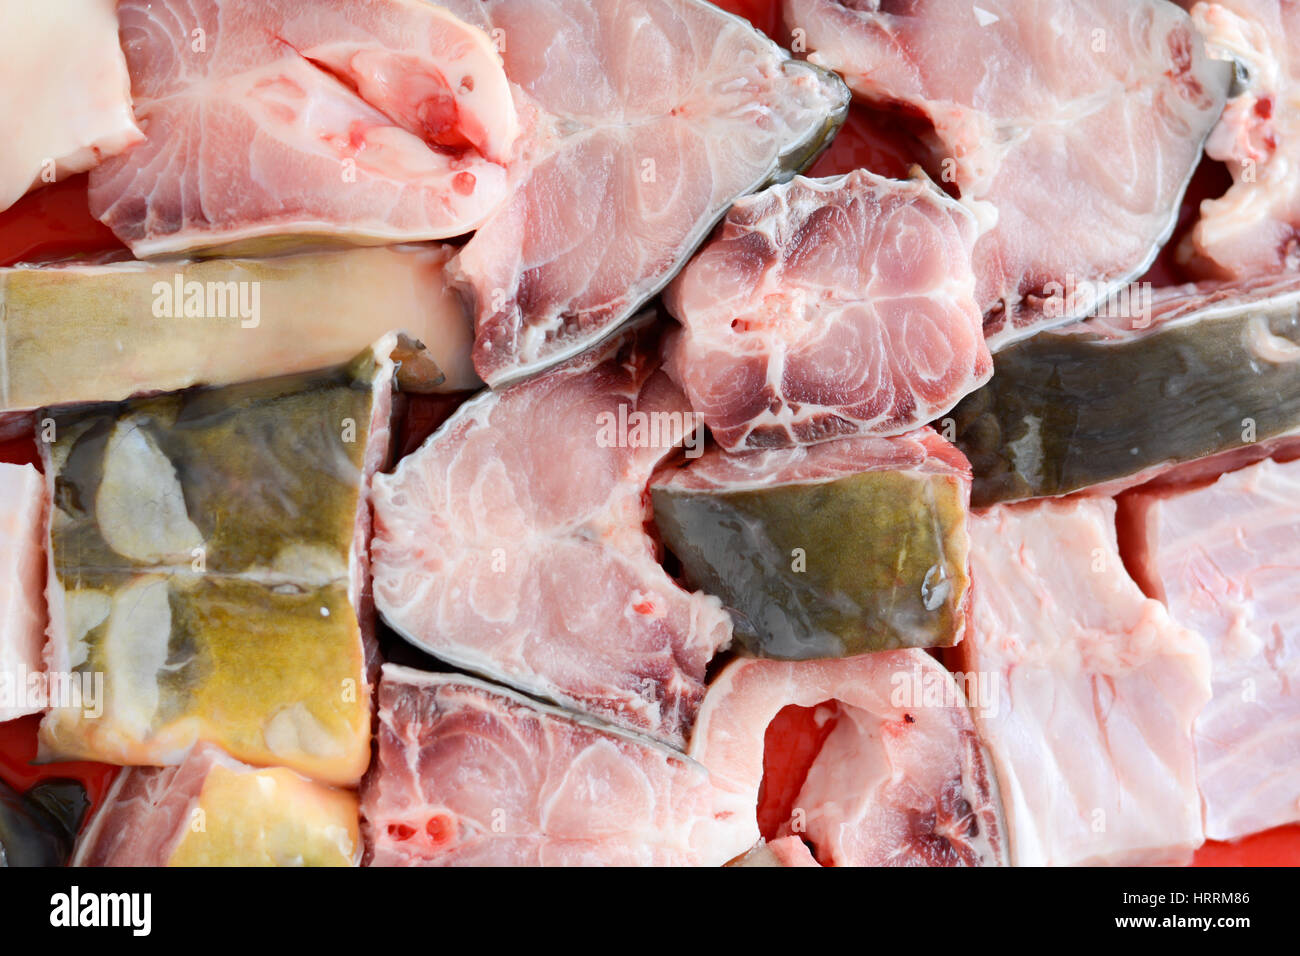 Picchetti di pesce sulla piastra pronta per essere coperto in briciole di pane e cotto shot da angolo superiore Foto Stock